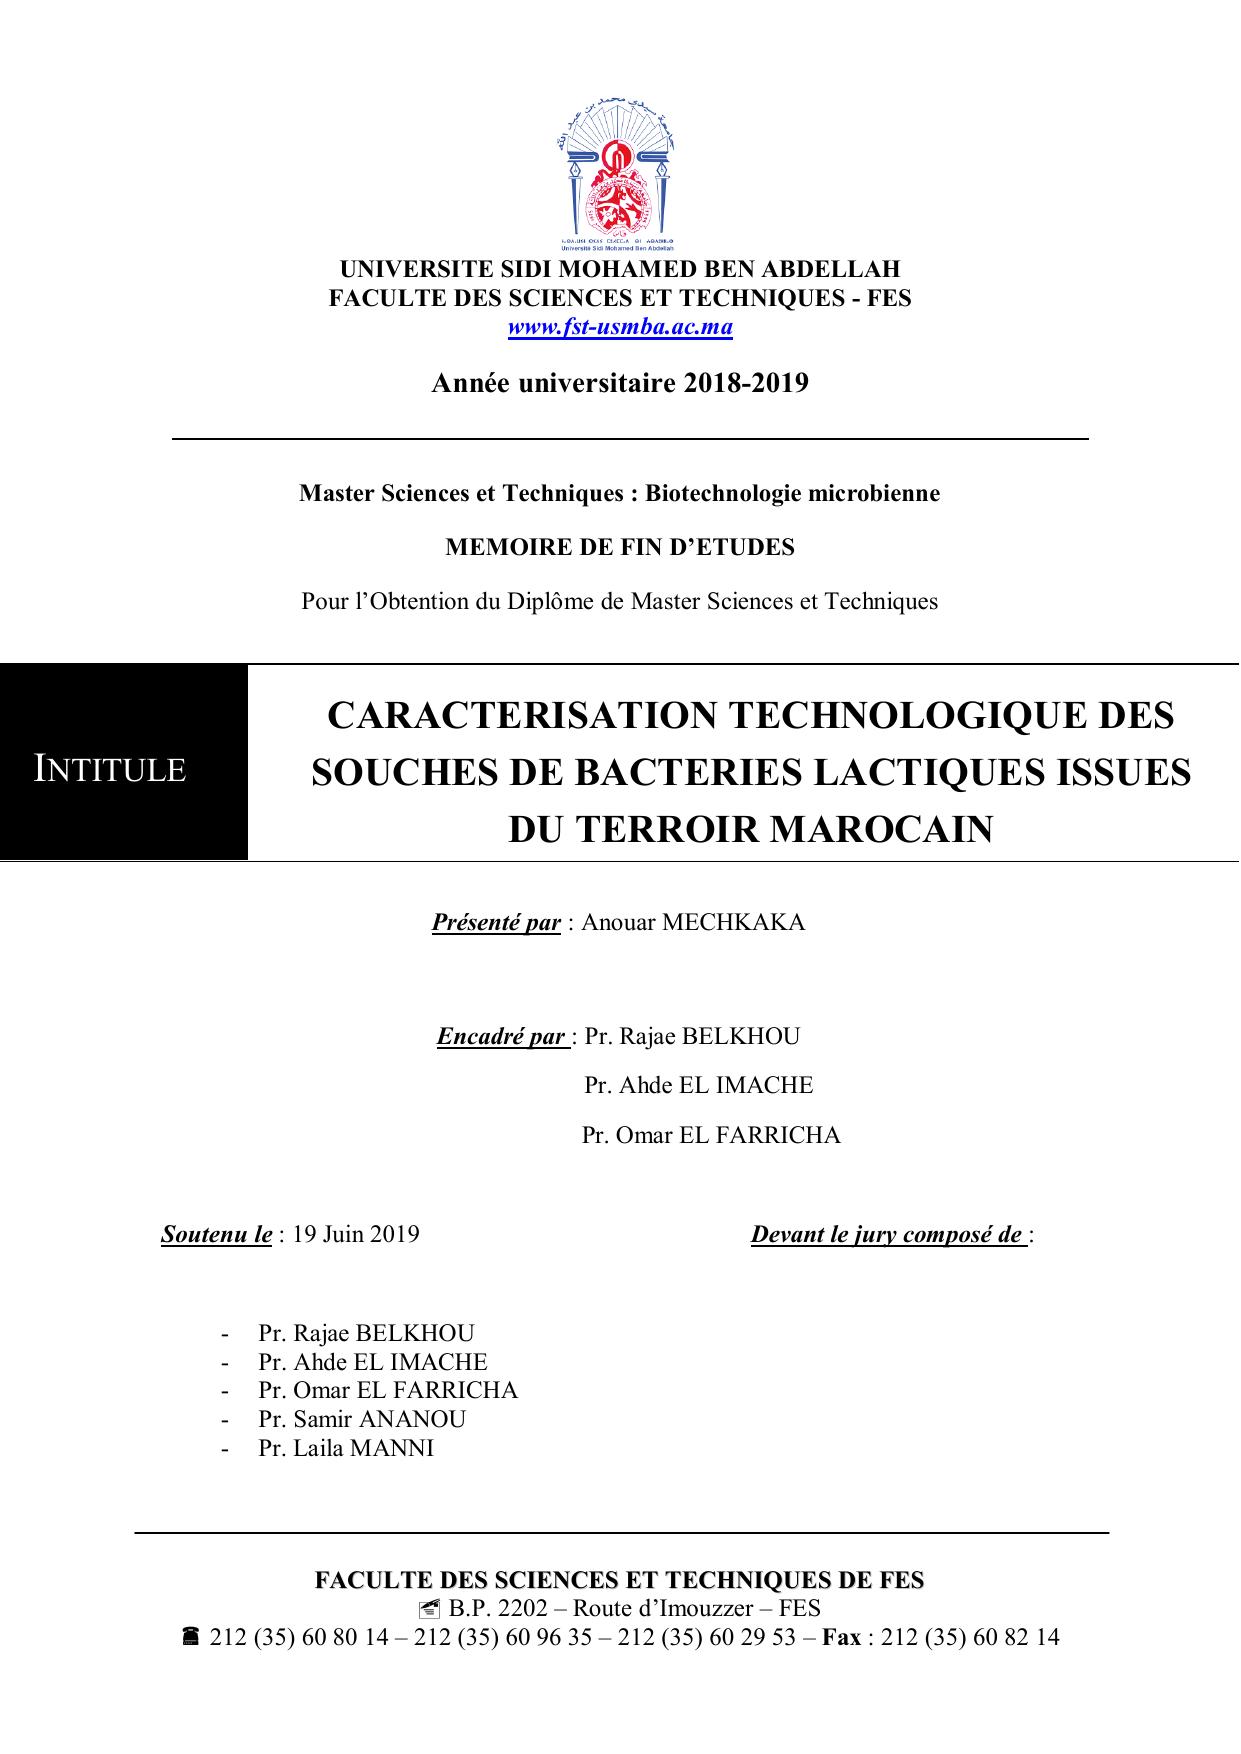 CARACTERISATION TECHNOLOGIQUE DES SOUCHES DE BACTERIES LACTIQUES ISSUES DU TERROIR MAROCAIN